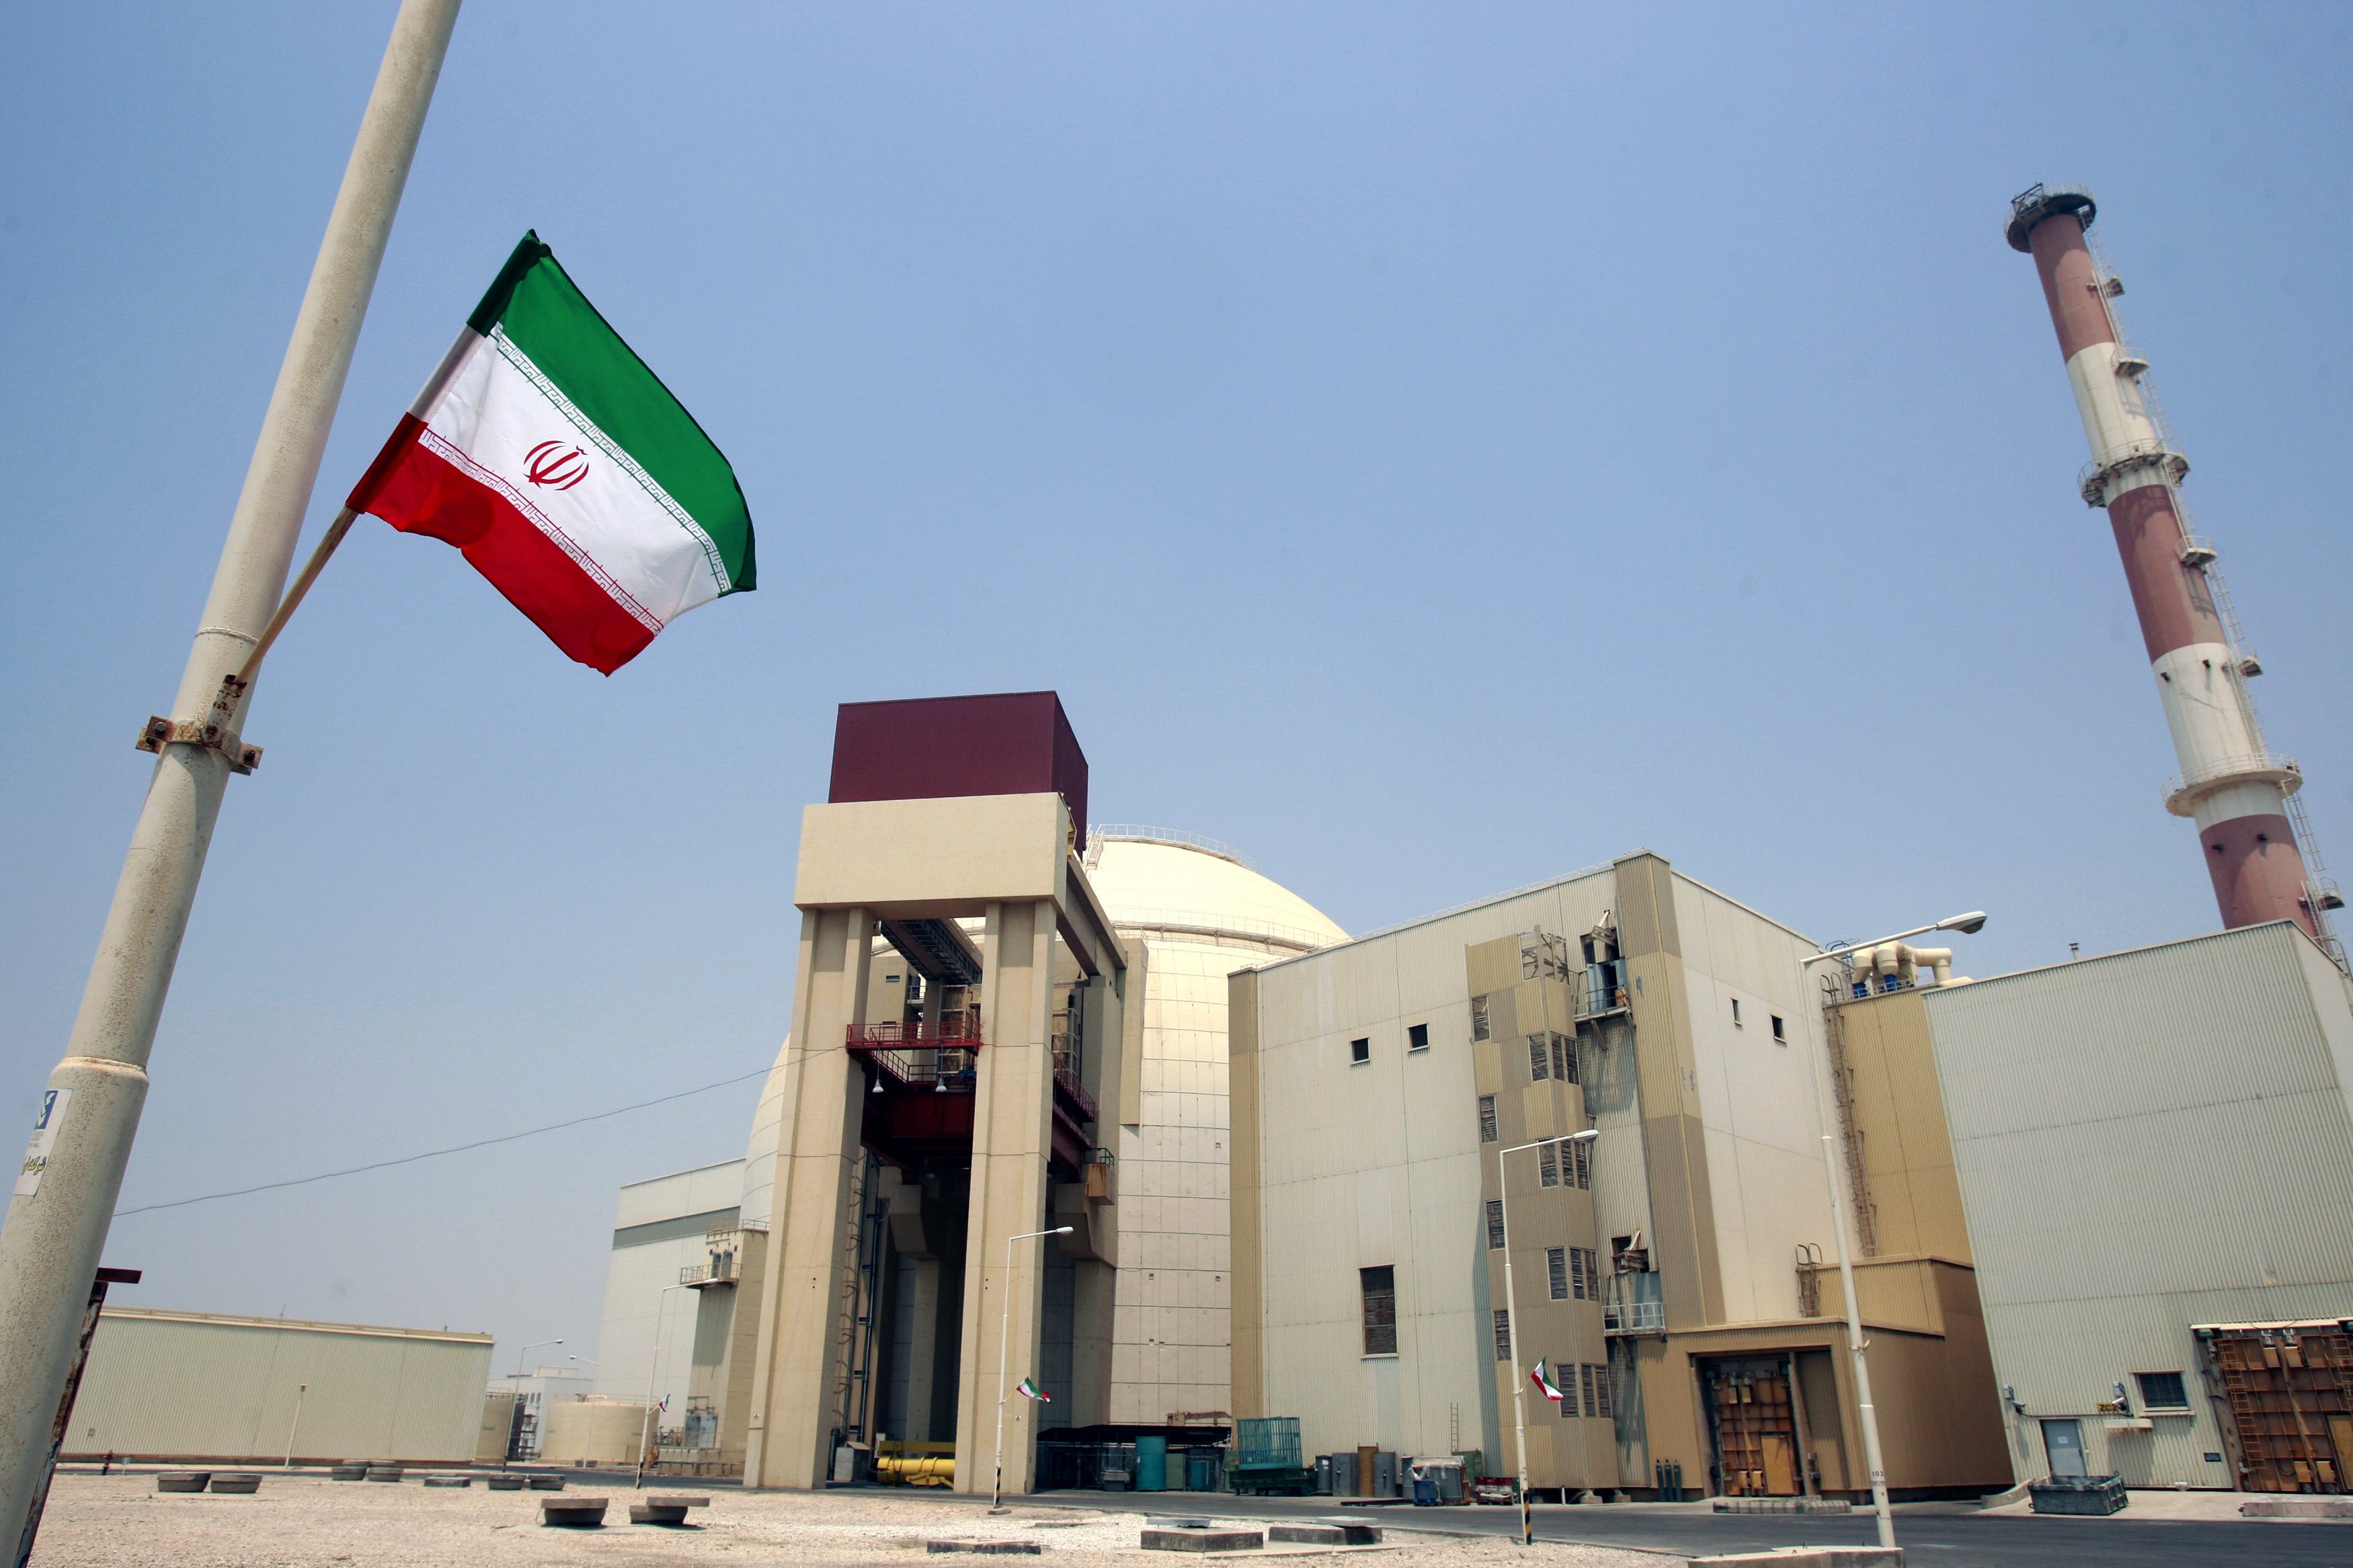 Թեհրանը ձգտում է ևս մեկ շանս տալ դիվանագիտությանը՝ փրկելու միջուկային գործարքը. Իրանի ԱԳՆ